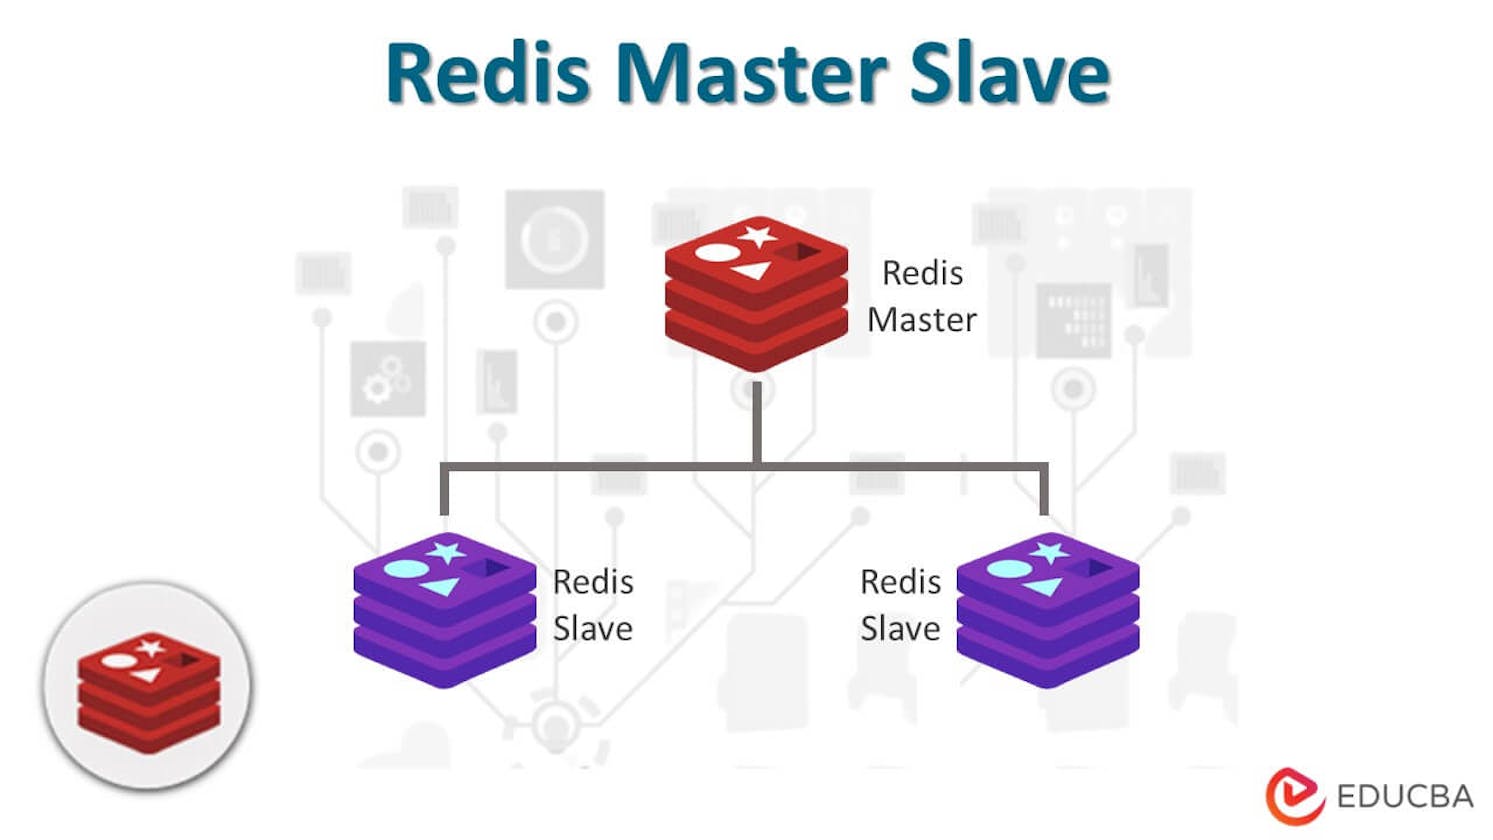 Cấu hình master slave trong Redis bằng Docker